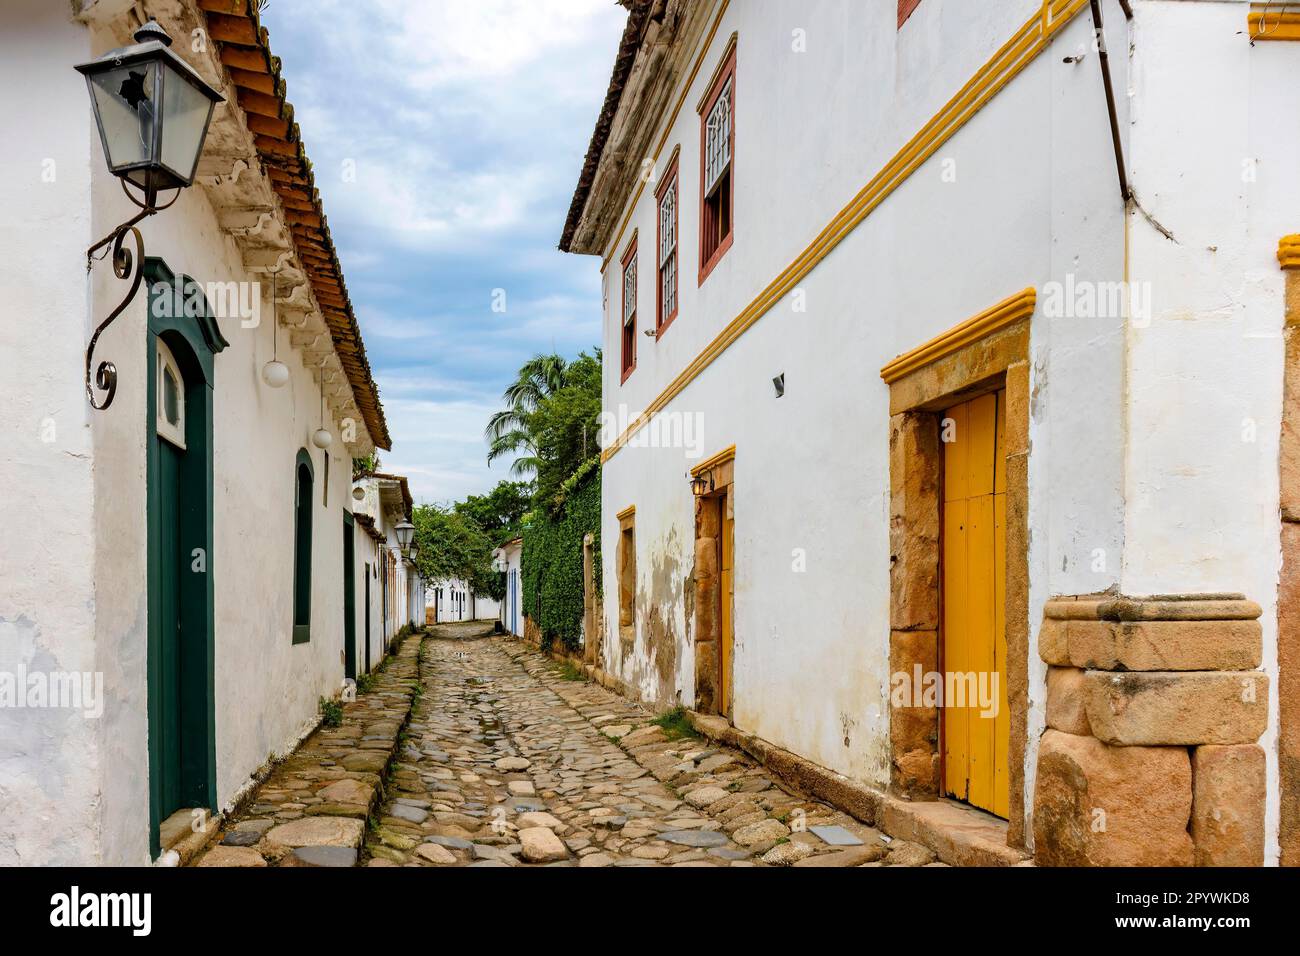 Traditionelle Straße in der historischen Stadt Paraty im Bundesstaat Rio de Janeiro mit Kopfsteinpflaster und Häusern im Kolonialstil, Brasilien Stockfoto